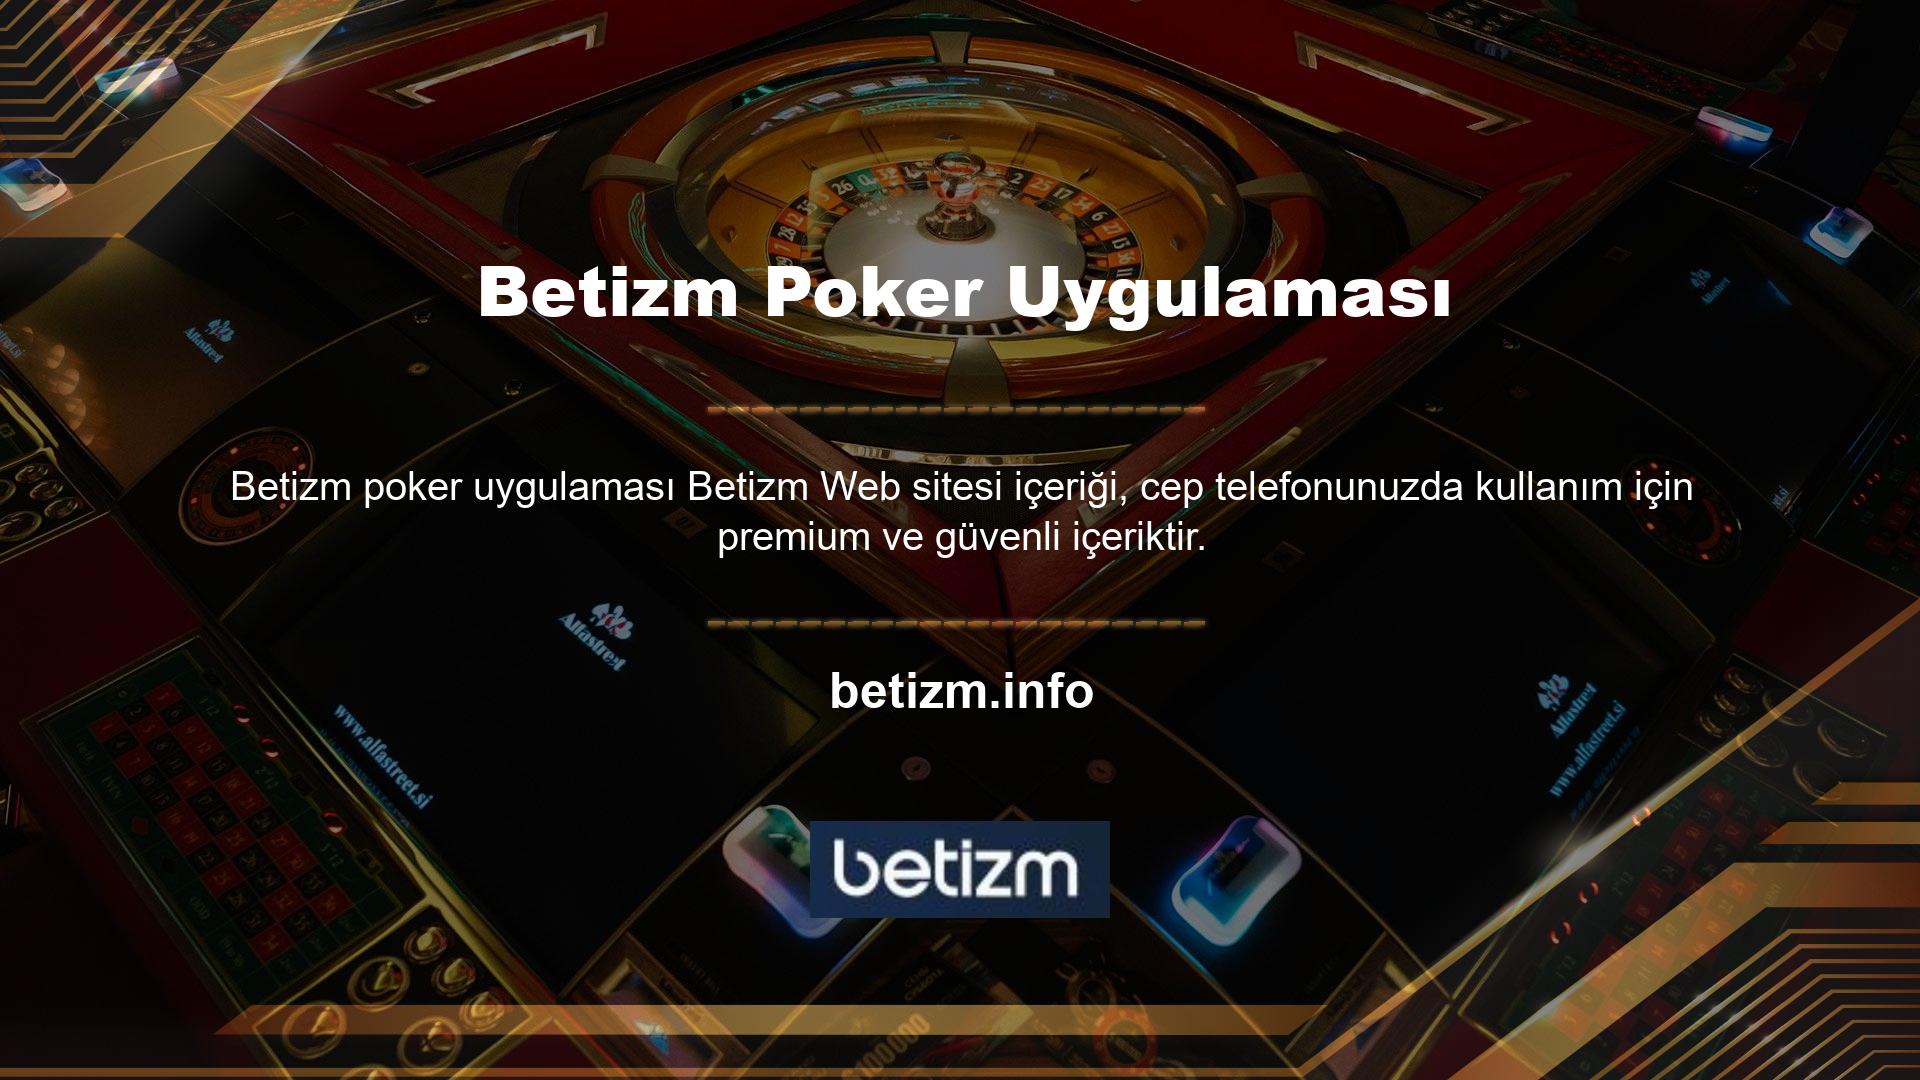 Betizm Poker uygulamasının bahis seçeneklerini kullanarak başarılı bahisler yapabilmek için öncelikle ilgili programdan ilgili seçenek uygulamasını indirmelisiniz